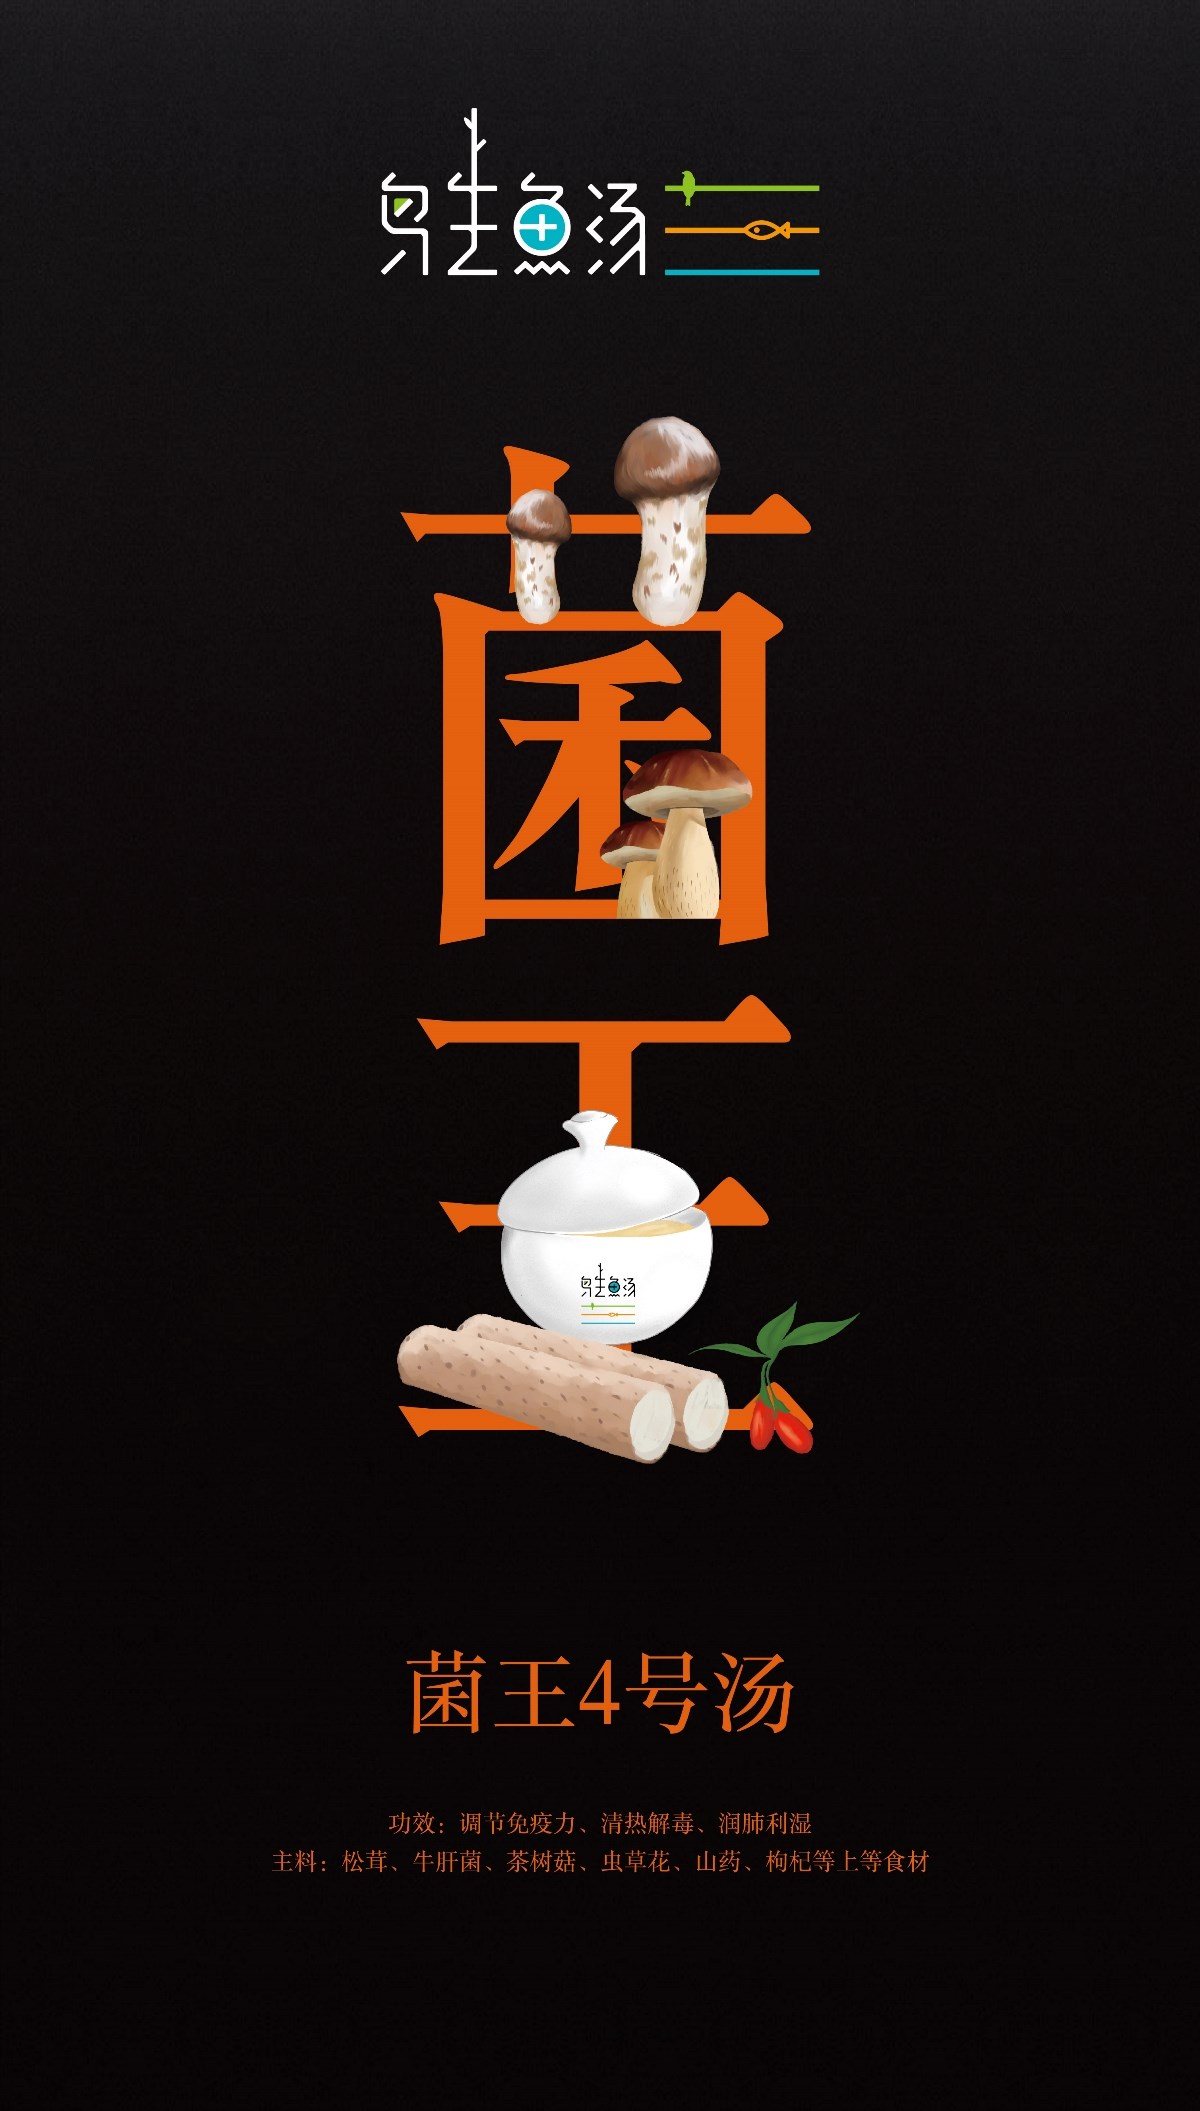 东意堂作品▕ 【鸟生鱼汤】品牌主题宣传画面设计